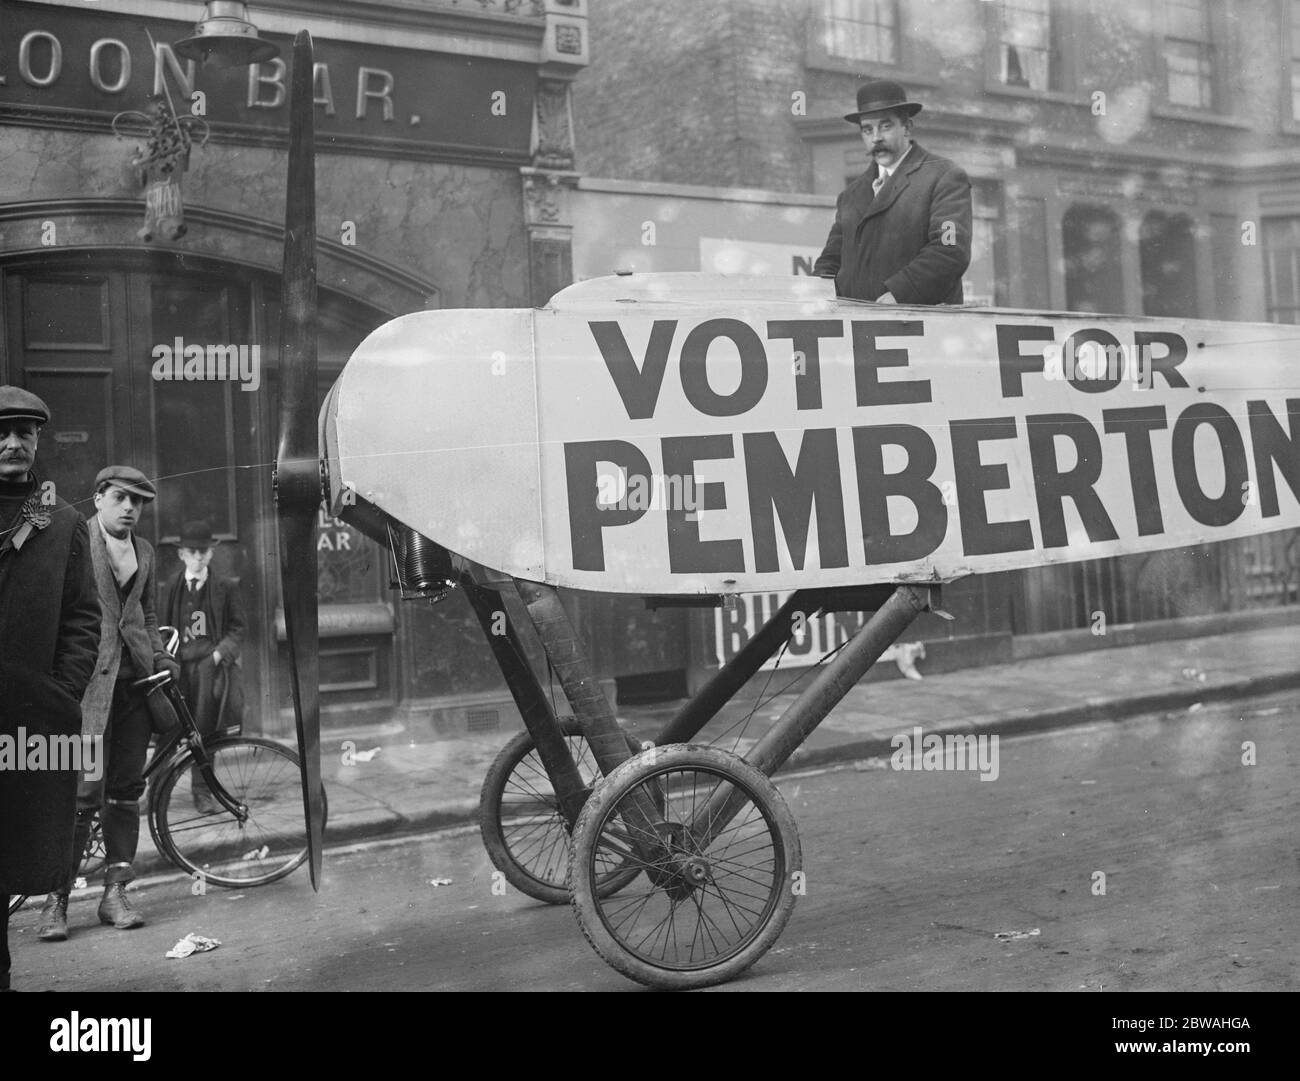 Elezione di fine miglio. Voter portato alla stazione di polling in aereo - 1916 Foto Stock